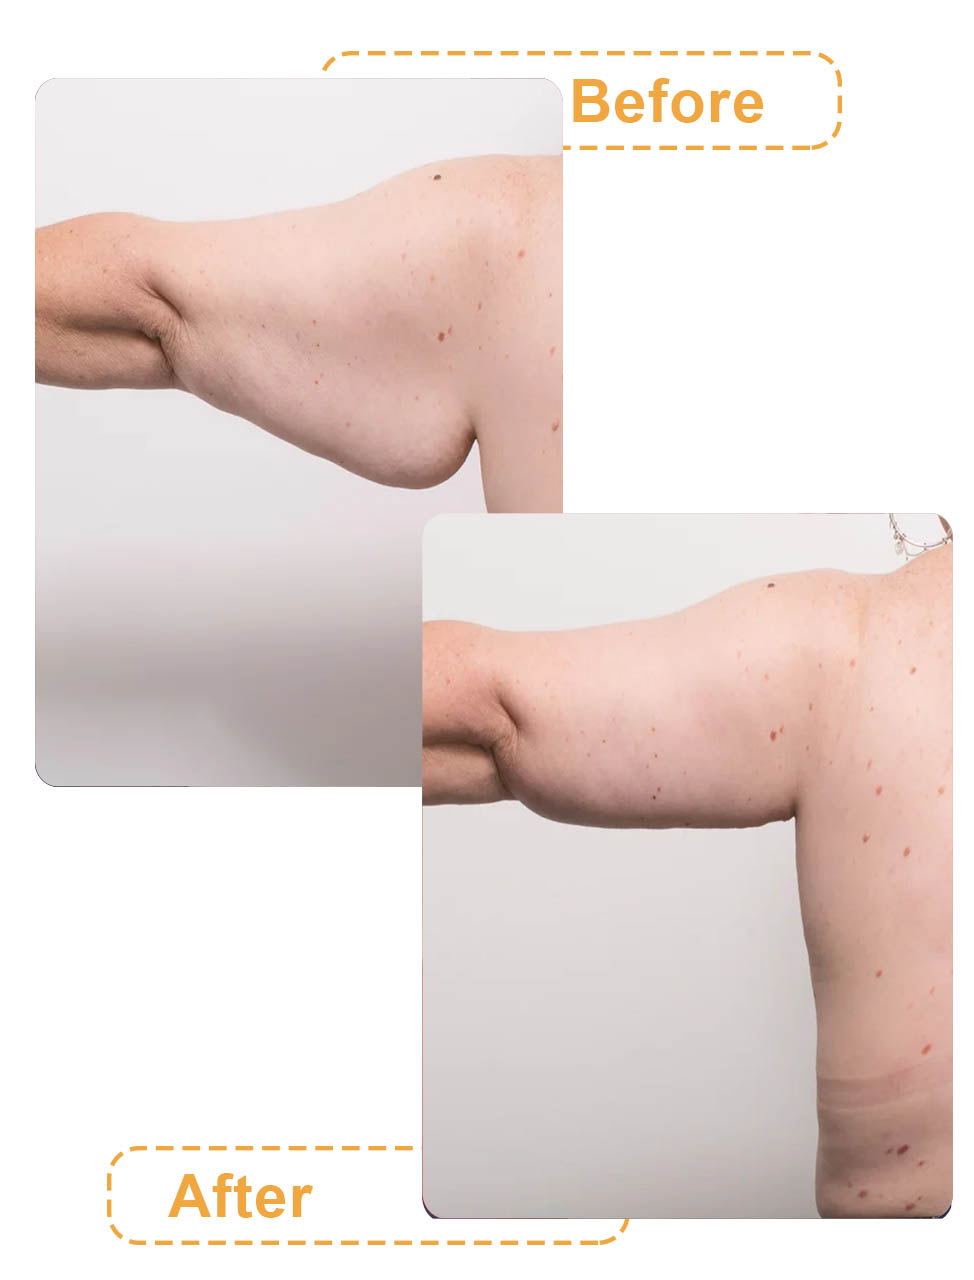 عکس های قبل و بعد لیپوماتیک بازو